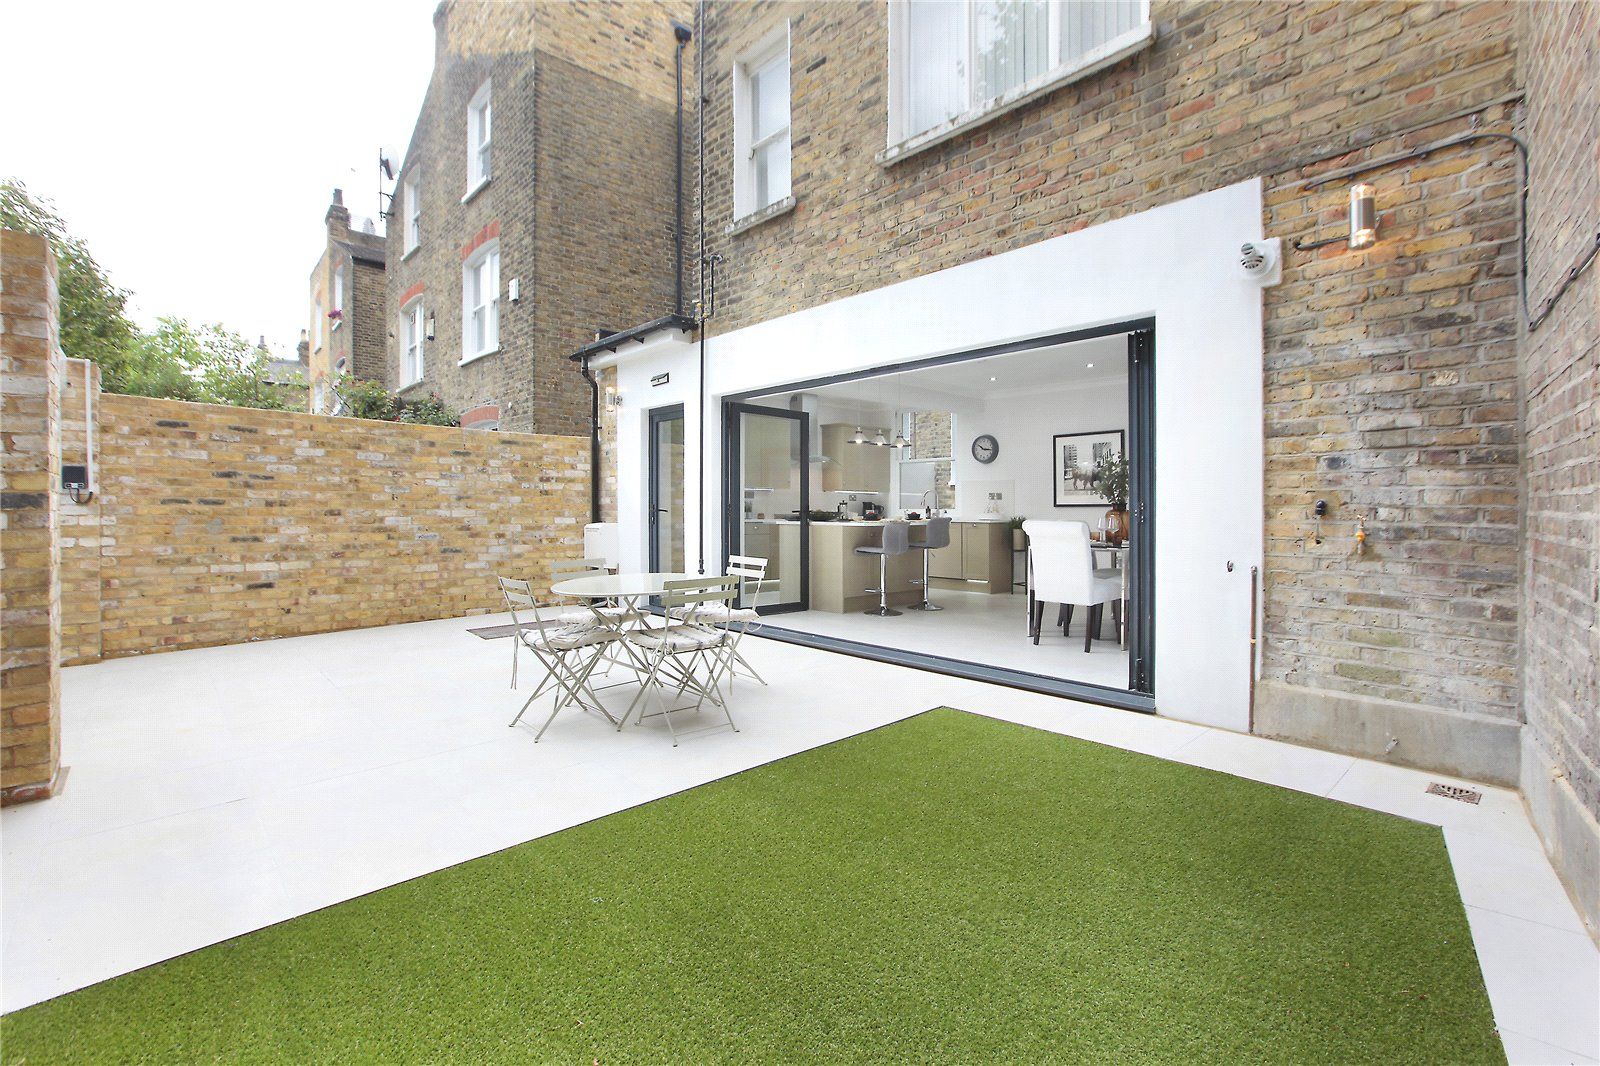 Kitchen extension Richmond London Design + Build Zen garden اینٹوں